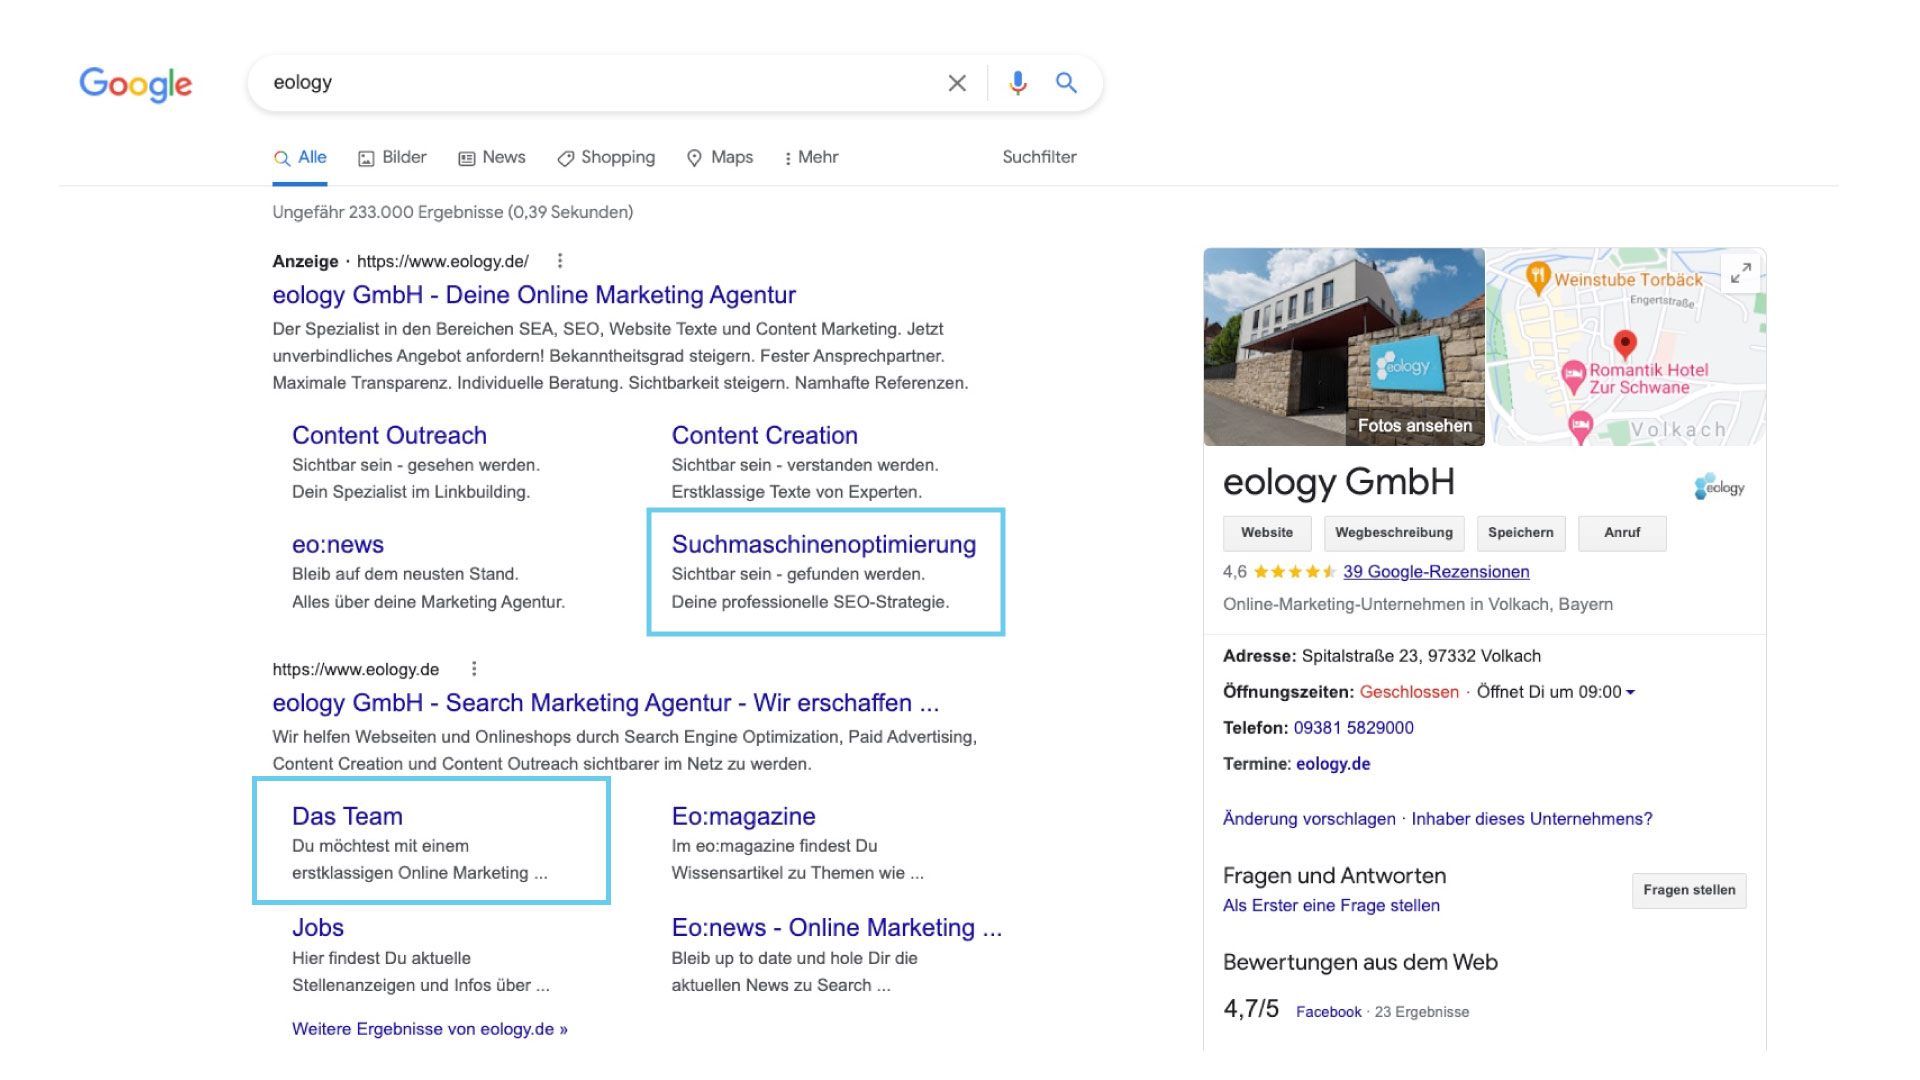 Das Bild zeigt einen Auszug der Suchergebnisseite (SERP) zur Suche "eology". Hier werden verschiedene Unterseiten (Deep Links) als Rich Snippet angezeigt.